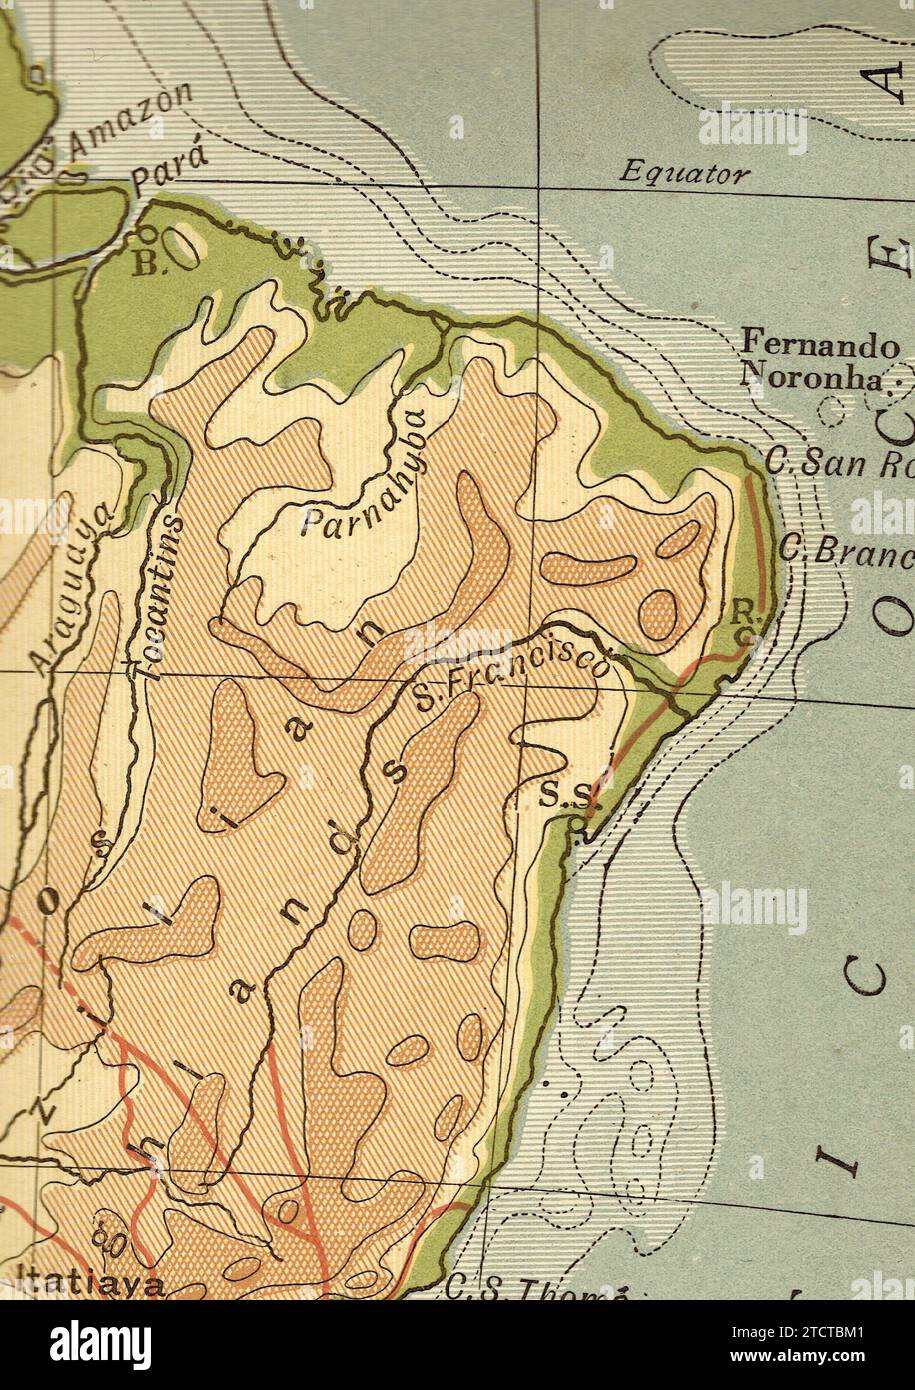 Una mappa geografica antica e d'epoca nella Seppia del Sud America che mostra le Highlands brasiliane. Foto Stock